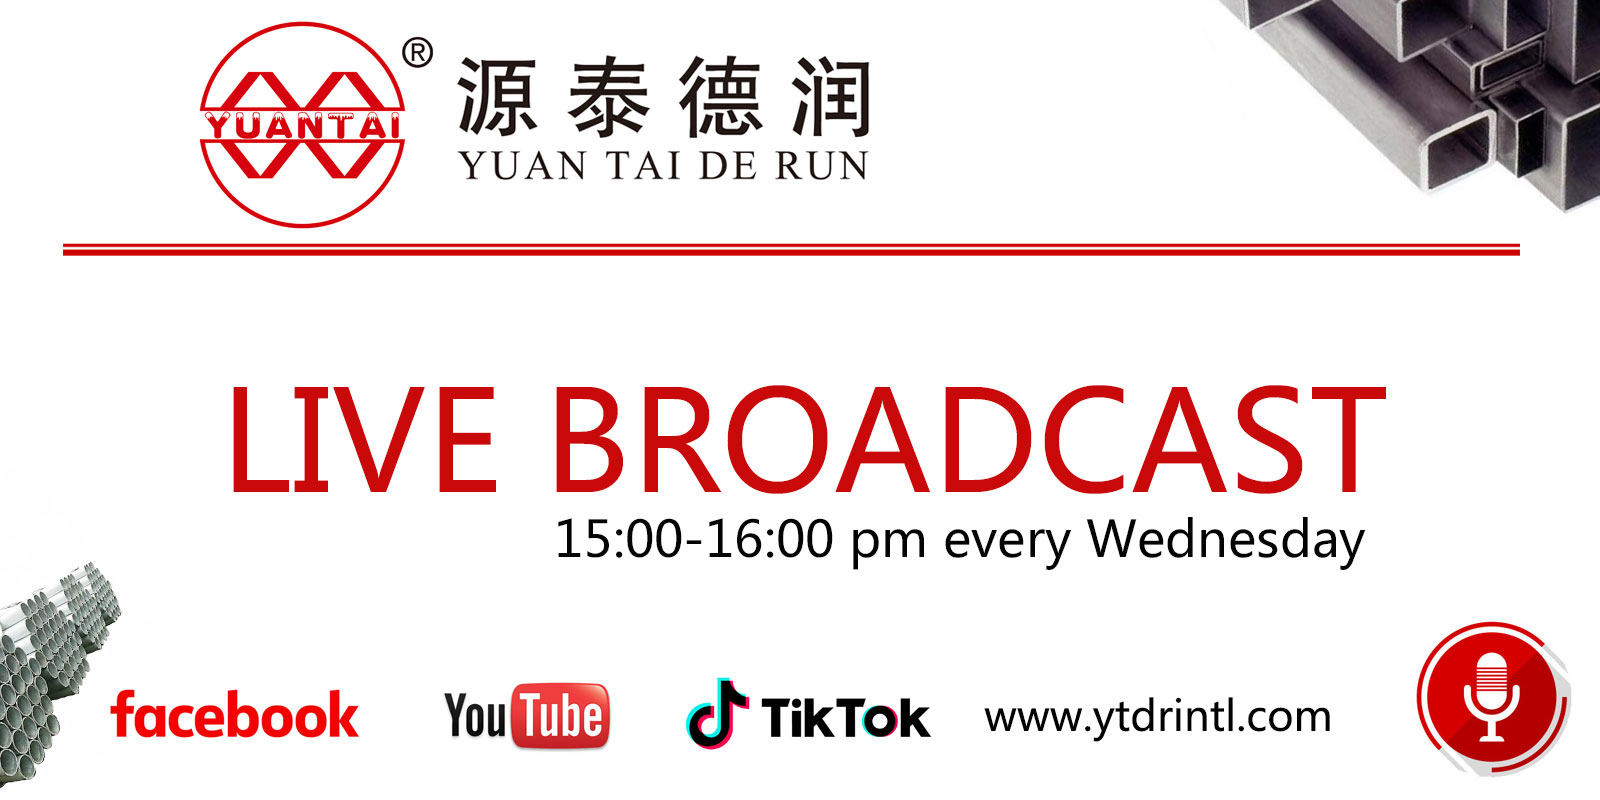 ក្រុមផលិតបំពង់ដែក Tianjin yuantaiderun នឹងជួបគ្នានៅក្នុងបន្ទប់ផ្សាយផ្ទាល់របស់ Facebook និង tiktok វេលាម៉ោង 3:00 រសៀល រៀងរាល់ថ្ងៃធ្វើការ ដើម្បីទទួលការប្រឹក្សាតាមអនឡាញរបស់អតិថិជន និង pr...